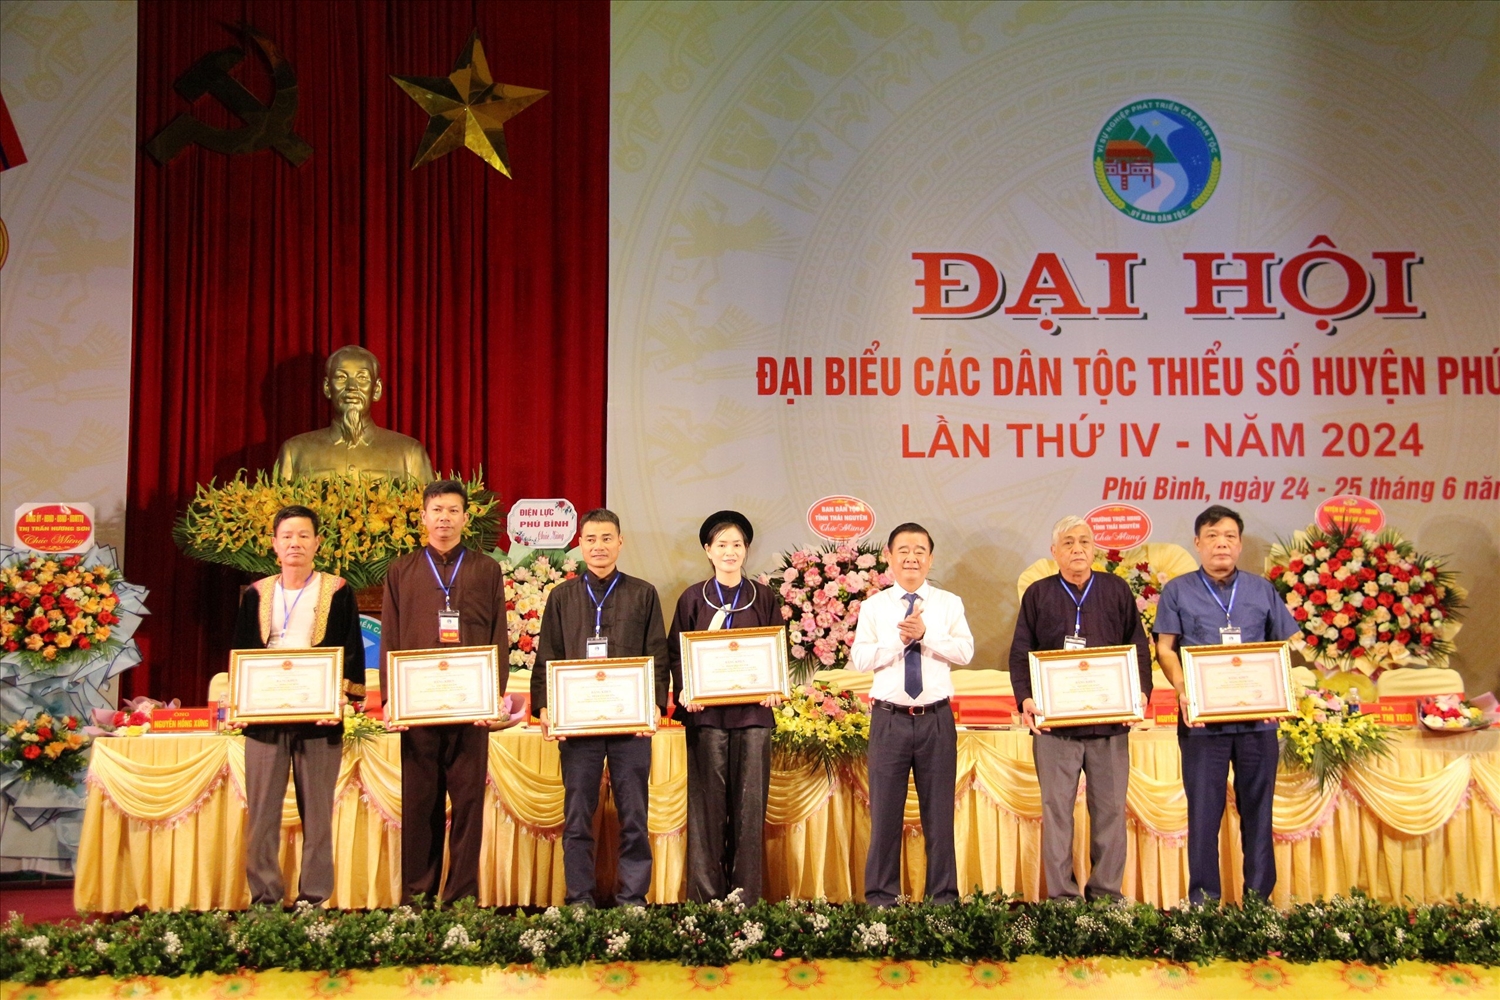 Tại Đại hội đại biểu các dân tộc thiểu số huyện Phú Bình lần thứ 4, nhiều tấm gương điển hình là người có uy tín trong vùng đồng bào DTTS đã được chính quyền ghi nhận, tôn vinh.